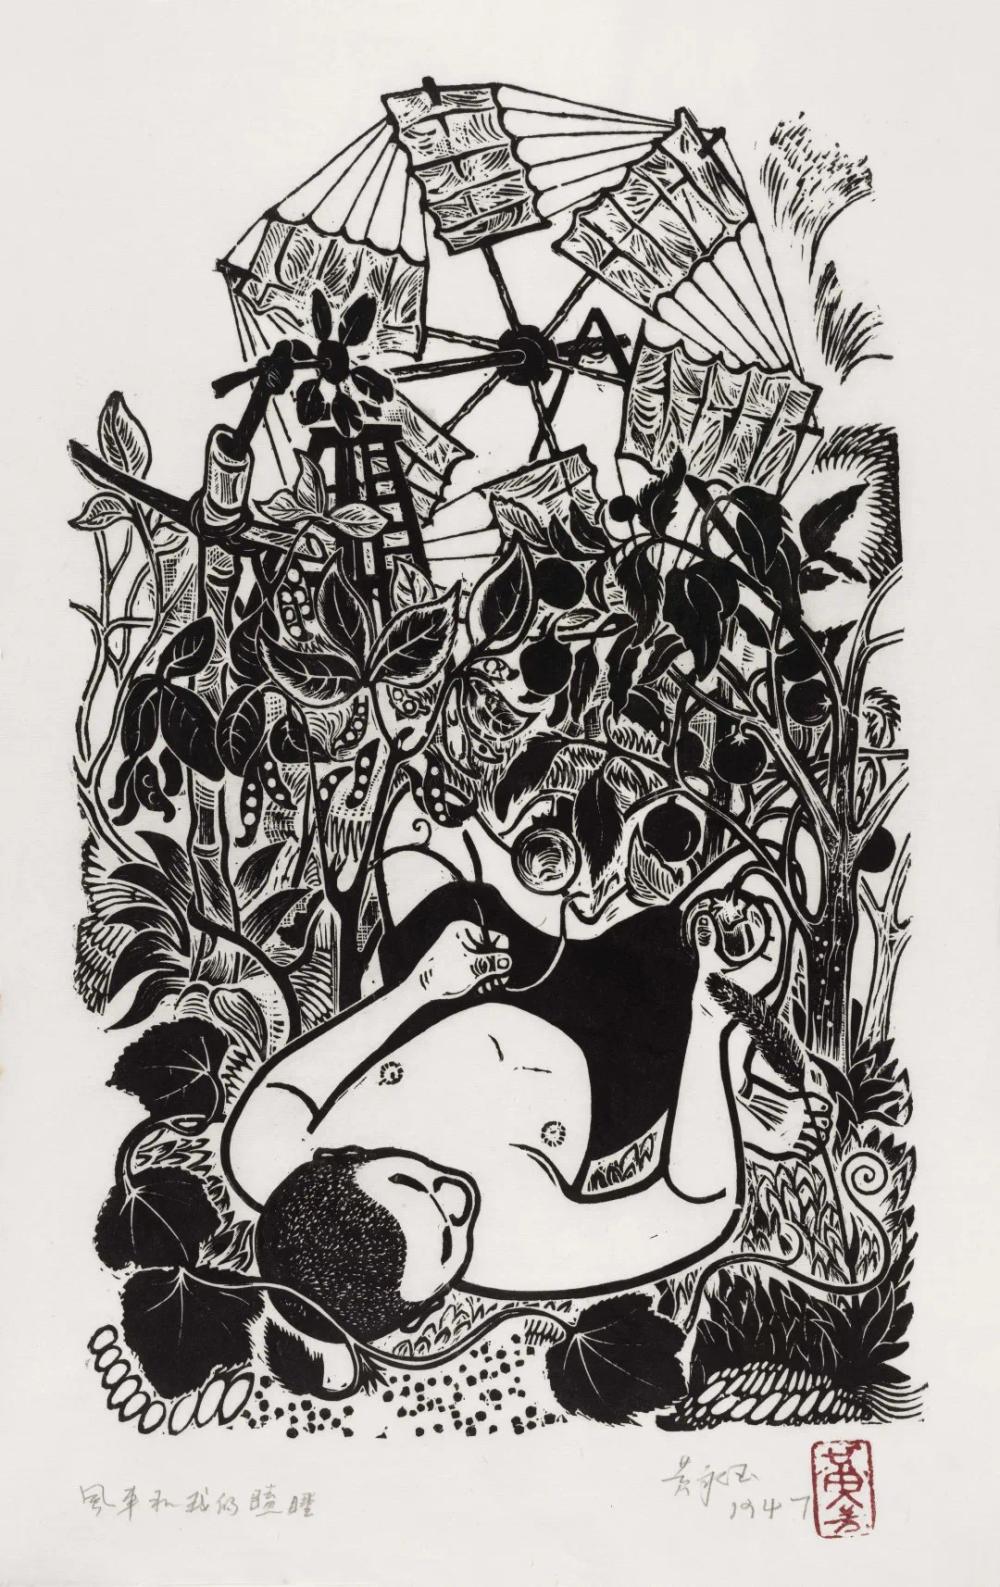 黄永玉《风车和我的瞌睡》 版画 1947年.jpg